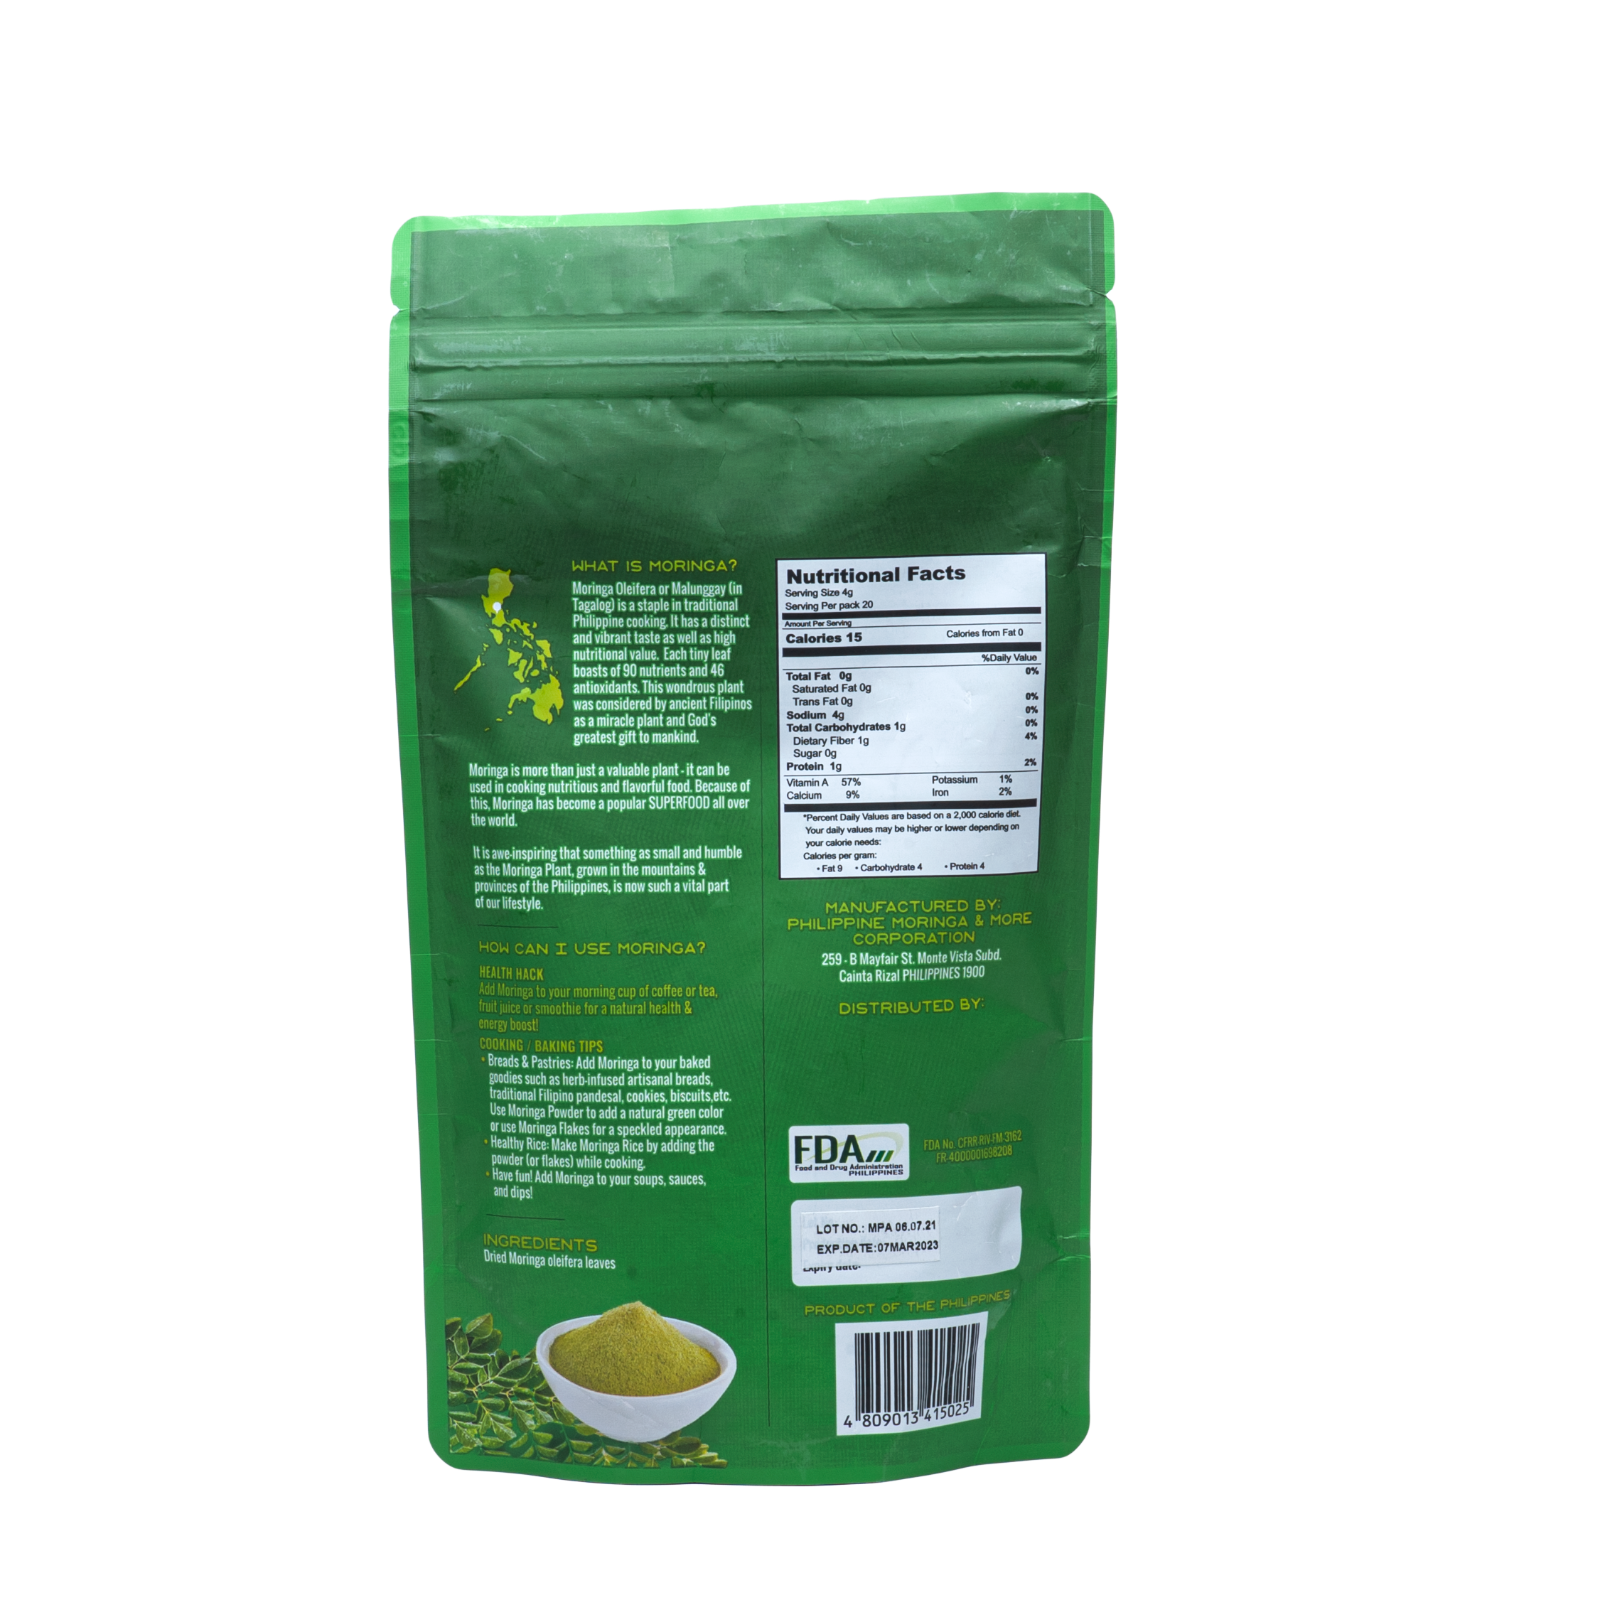 モリンガパウダー 80g粉 100種類近くの栄養素を持つ スーパーフード-1